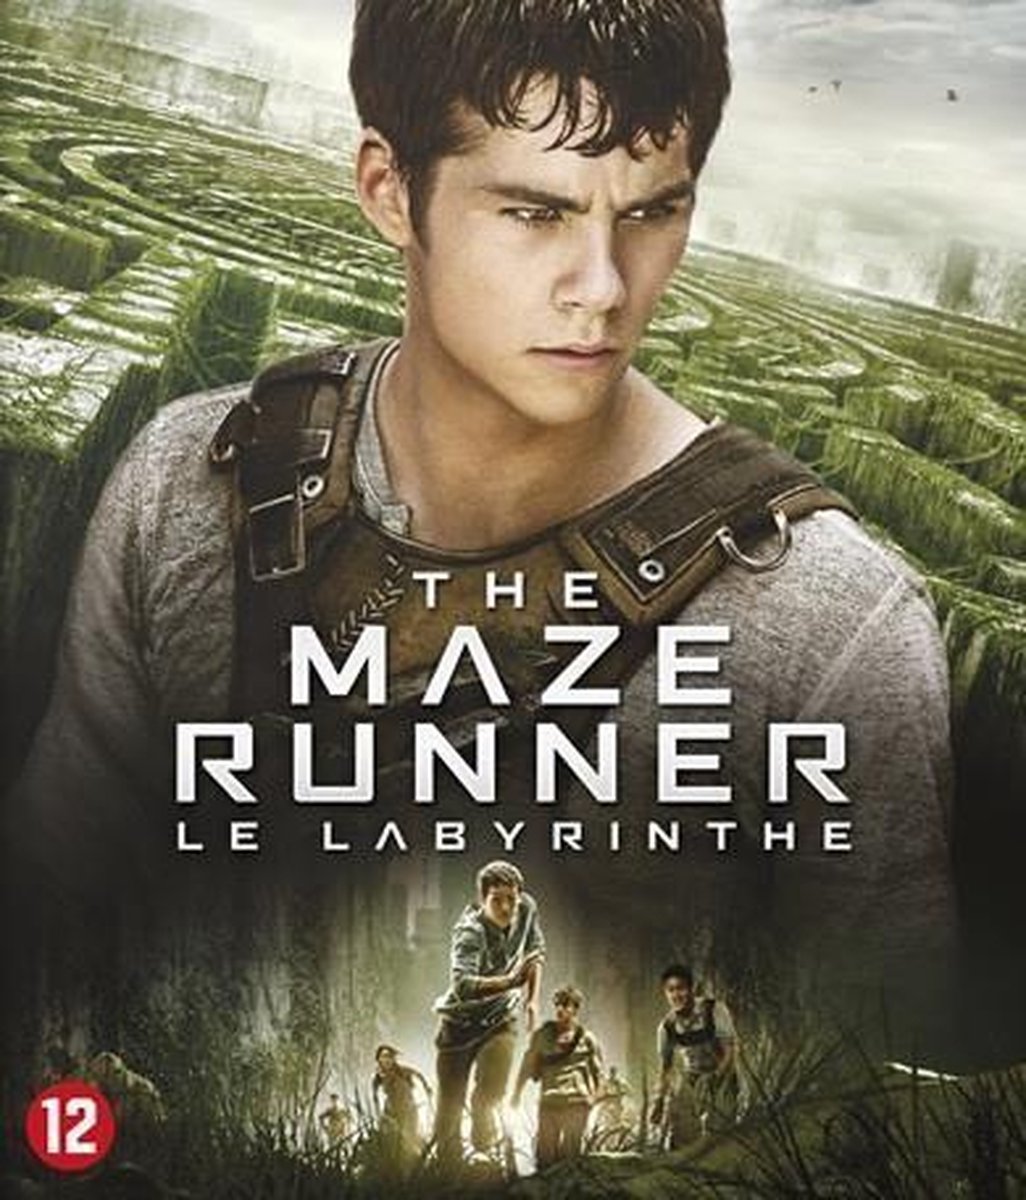 Maze Runner (Blu-ray) - Disney Movies